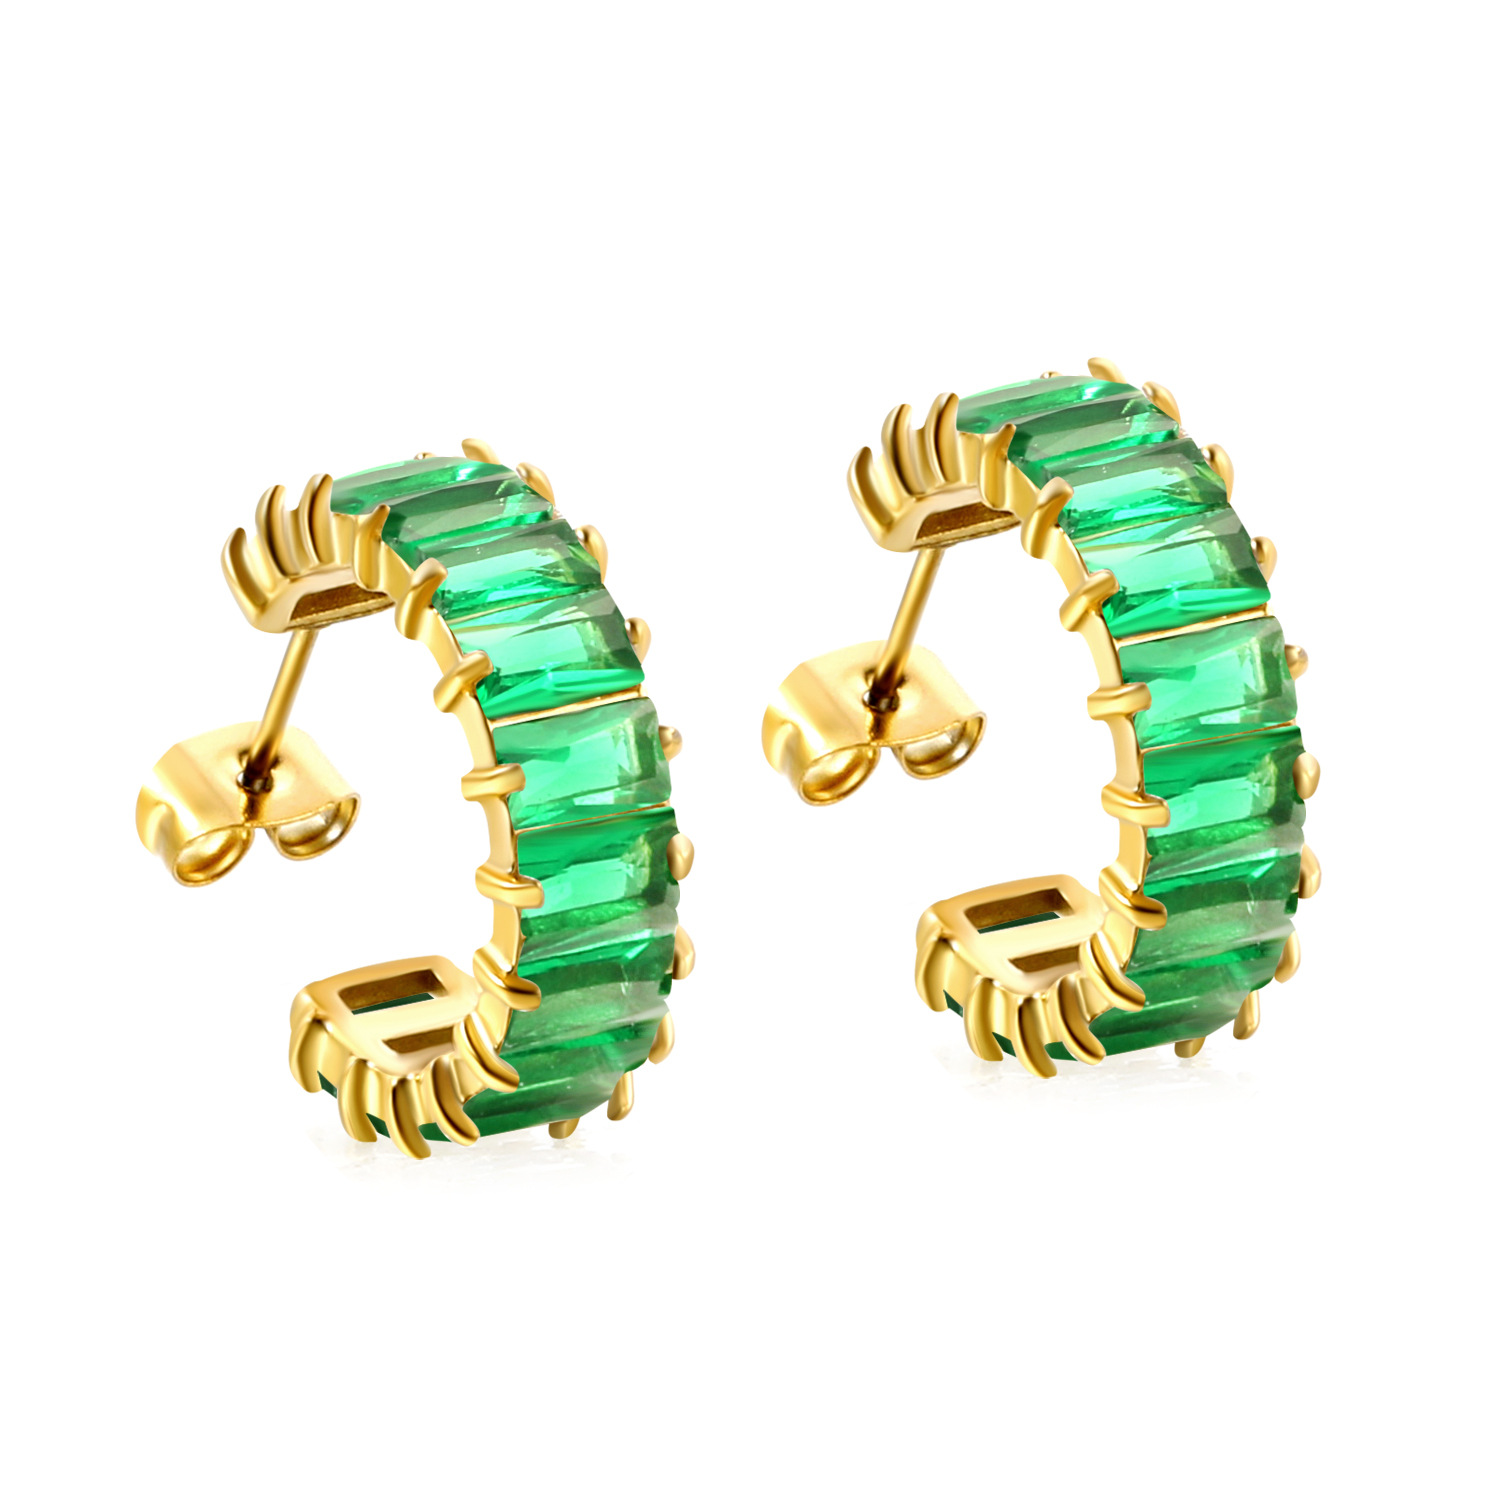 Green diamond earrings, gold